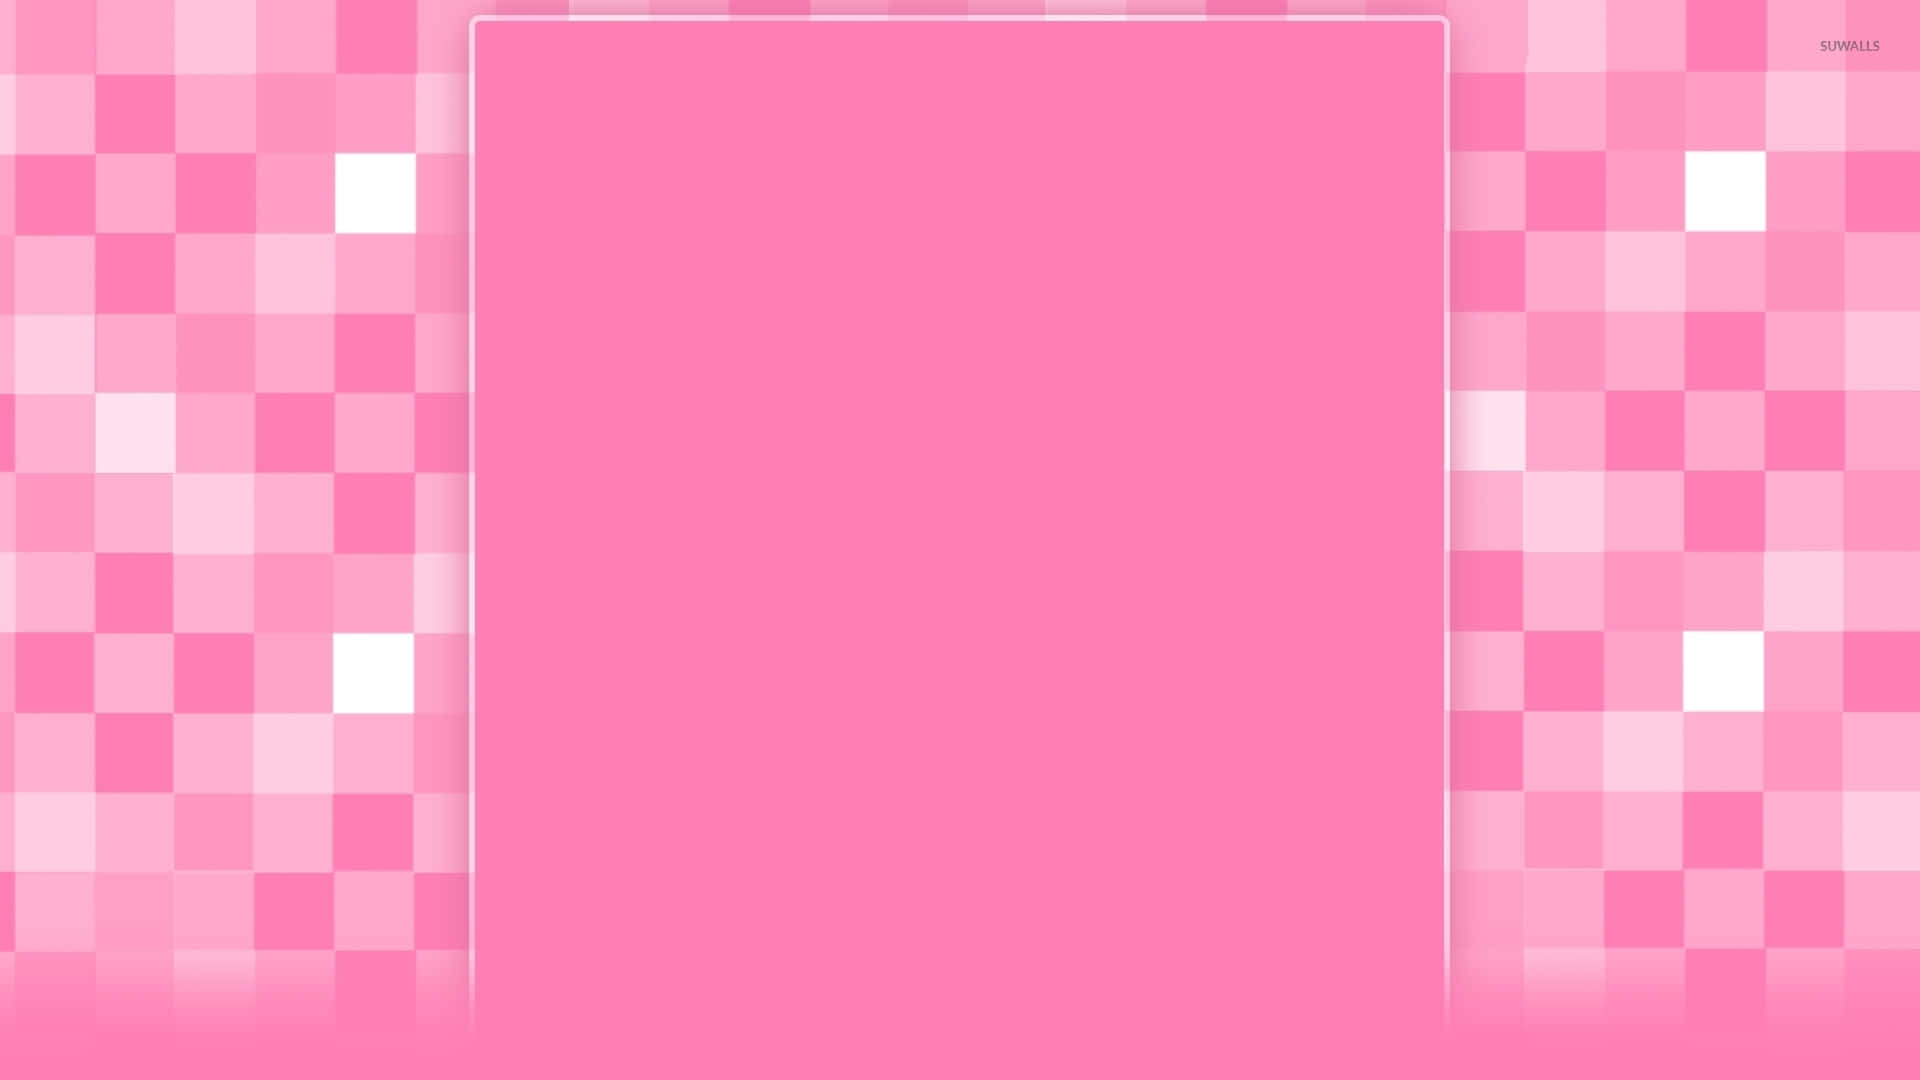 Sfondocon Quadrati Rosa - Sfondo Con Quadrati Rosa